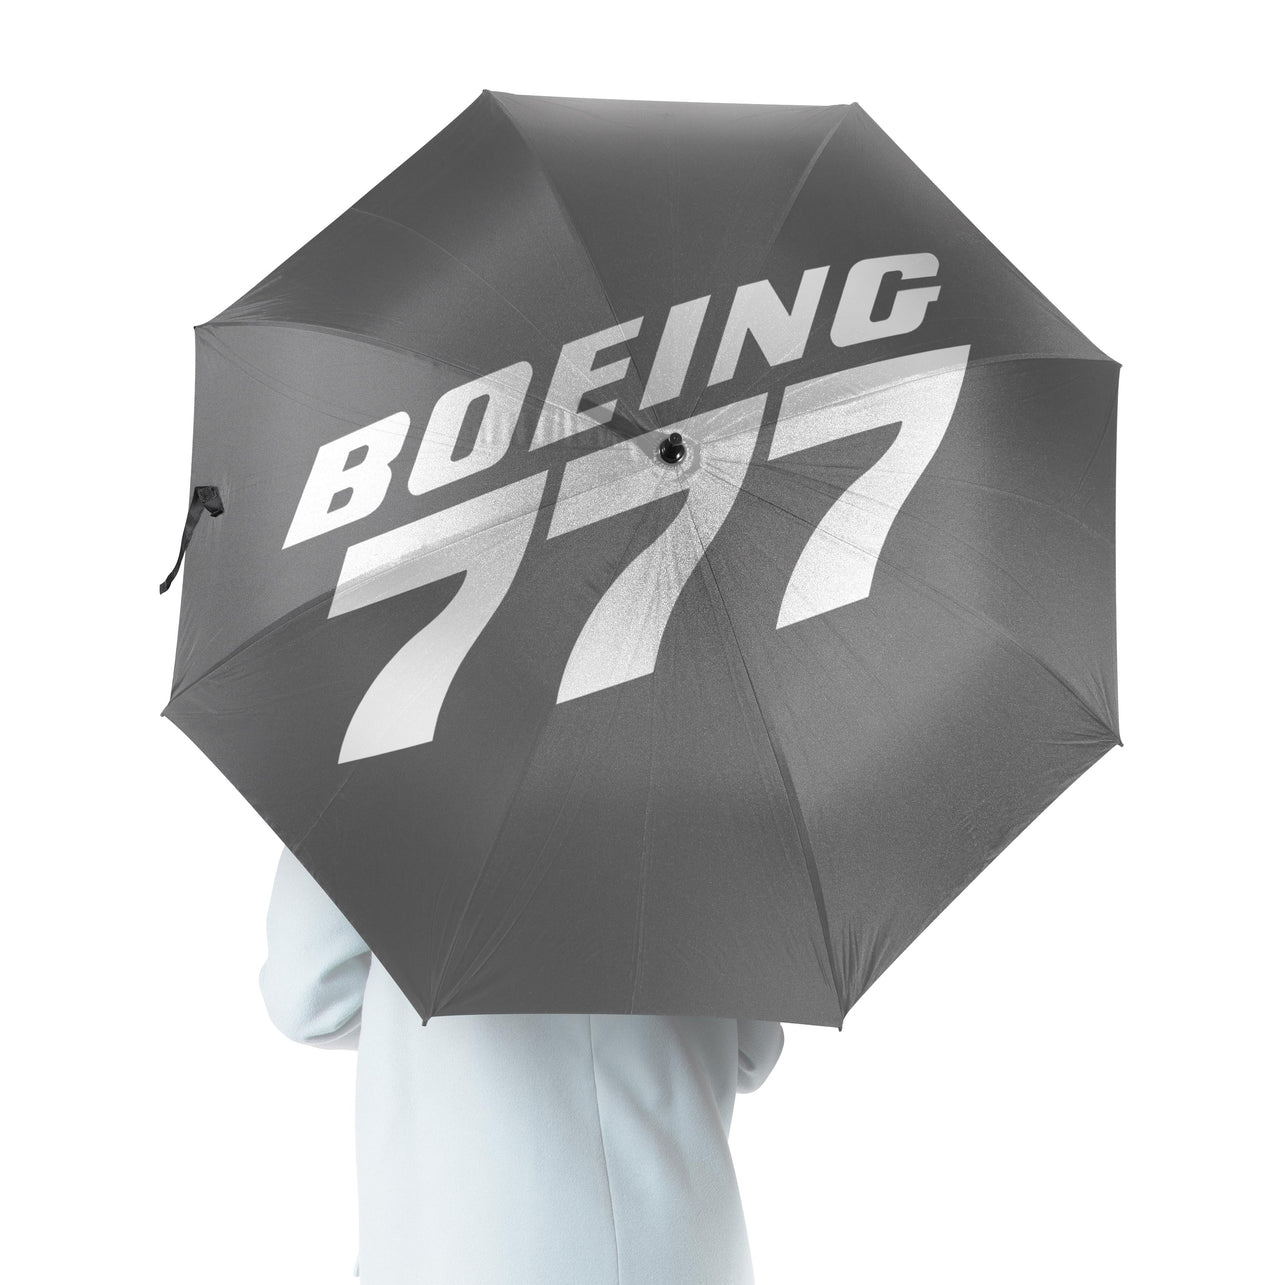 Boeing 777 & Text Designed Umbrella